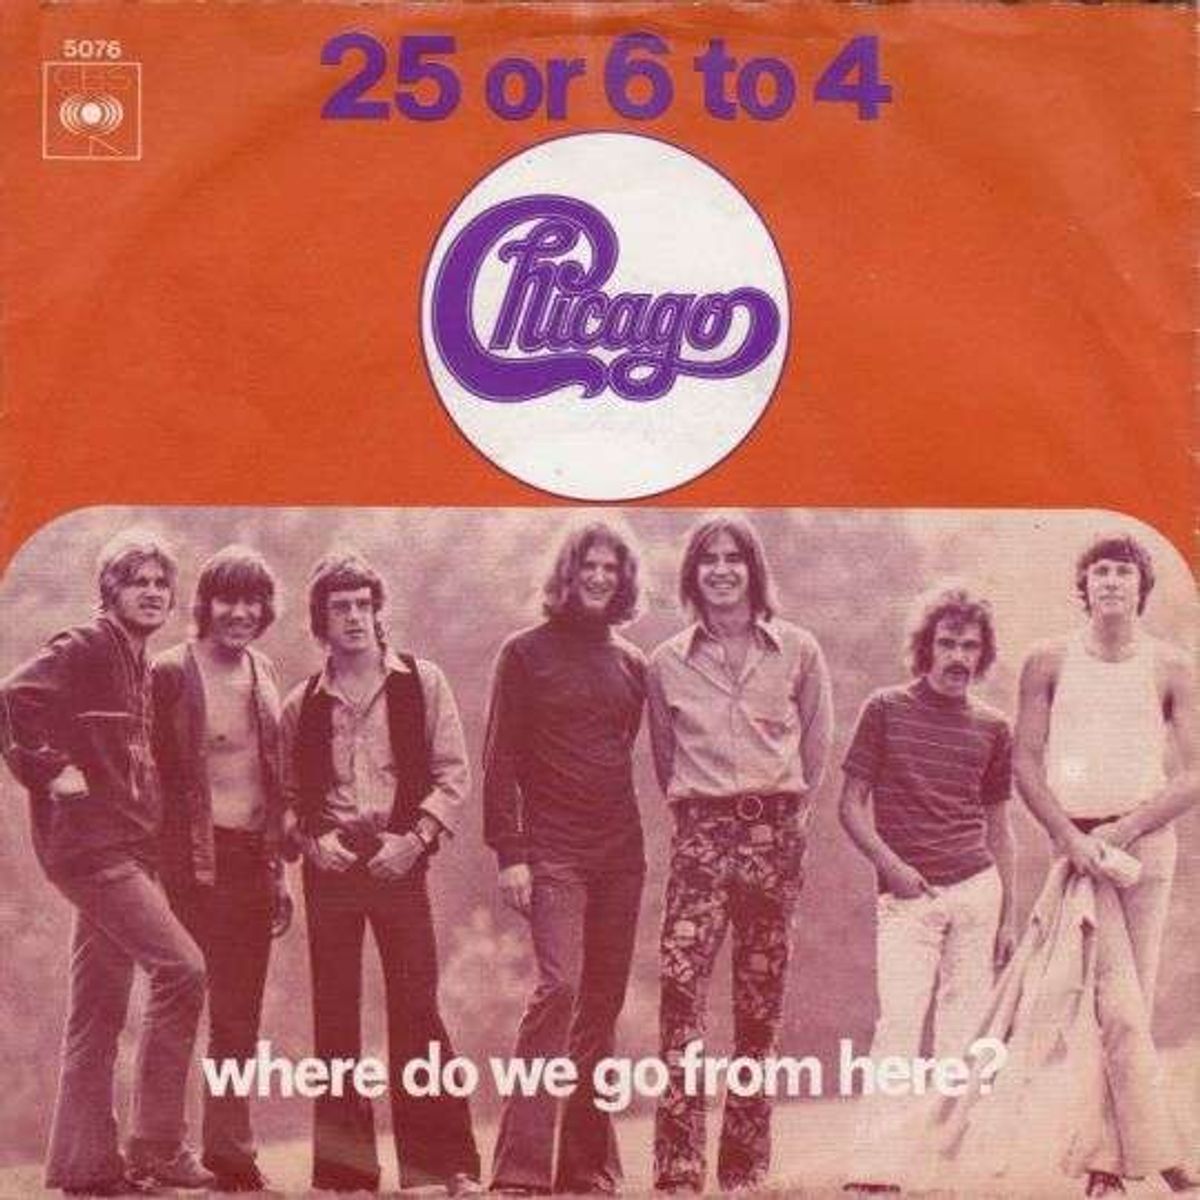 #Koperwaren - Chicago - 25 Or 6 To 4 (1970)